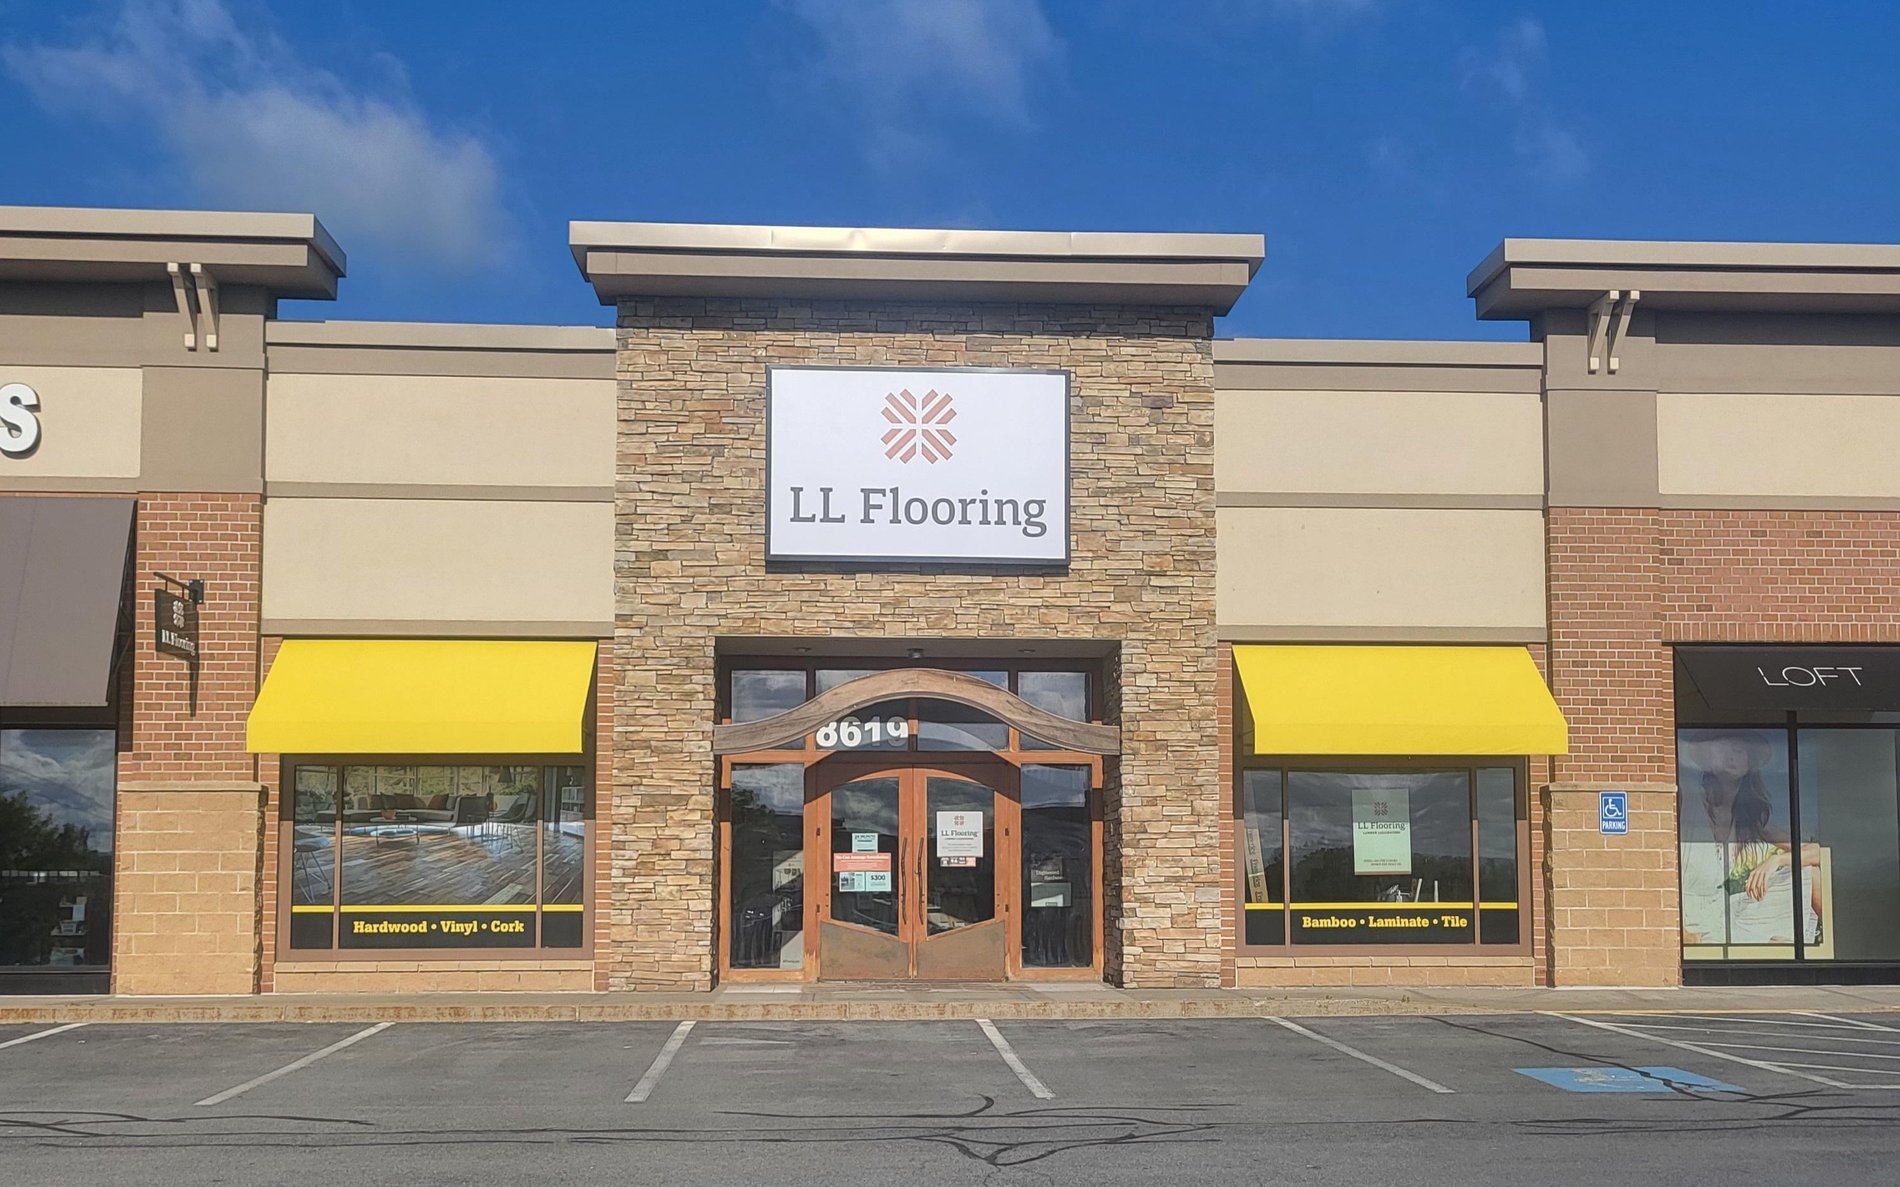 LL Flooring #1405 New Hartford | 8619 Clinton St | Storefront